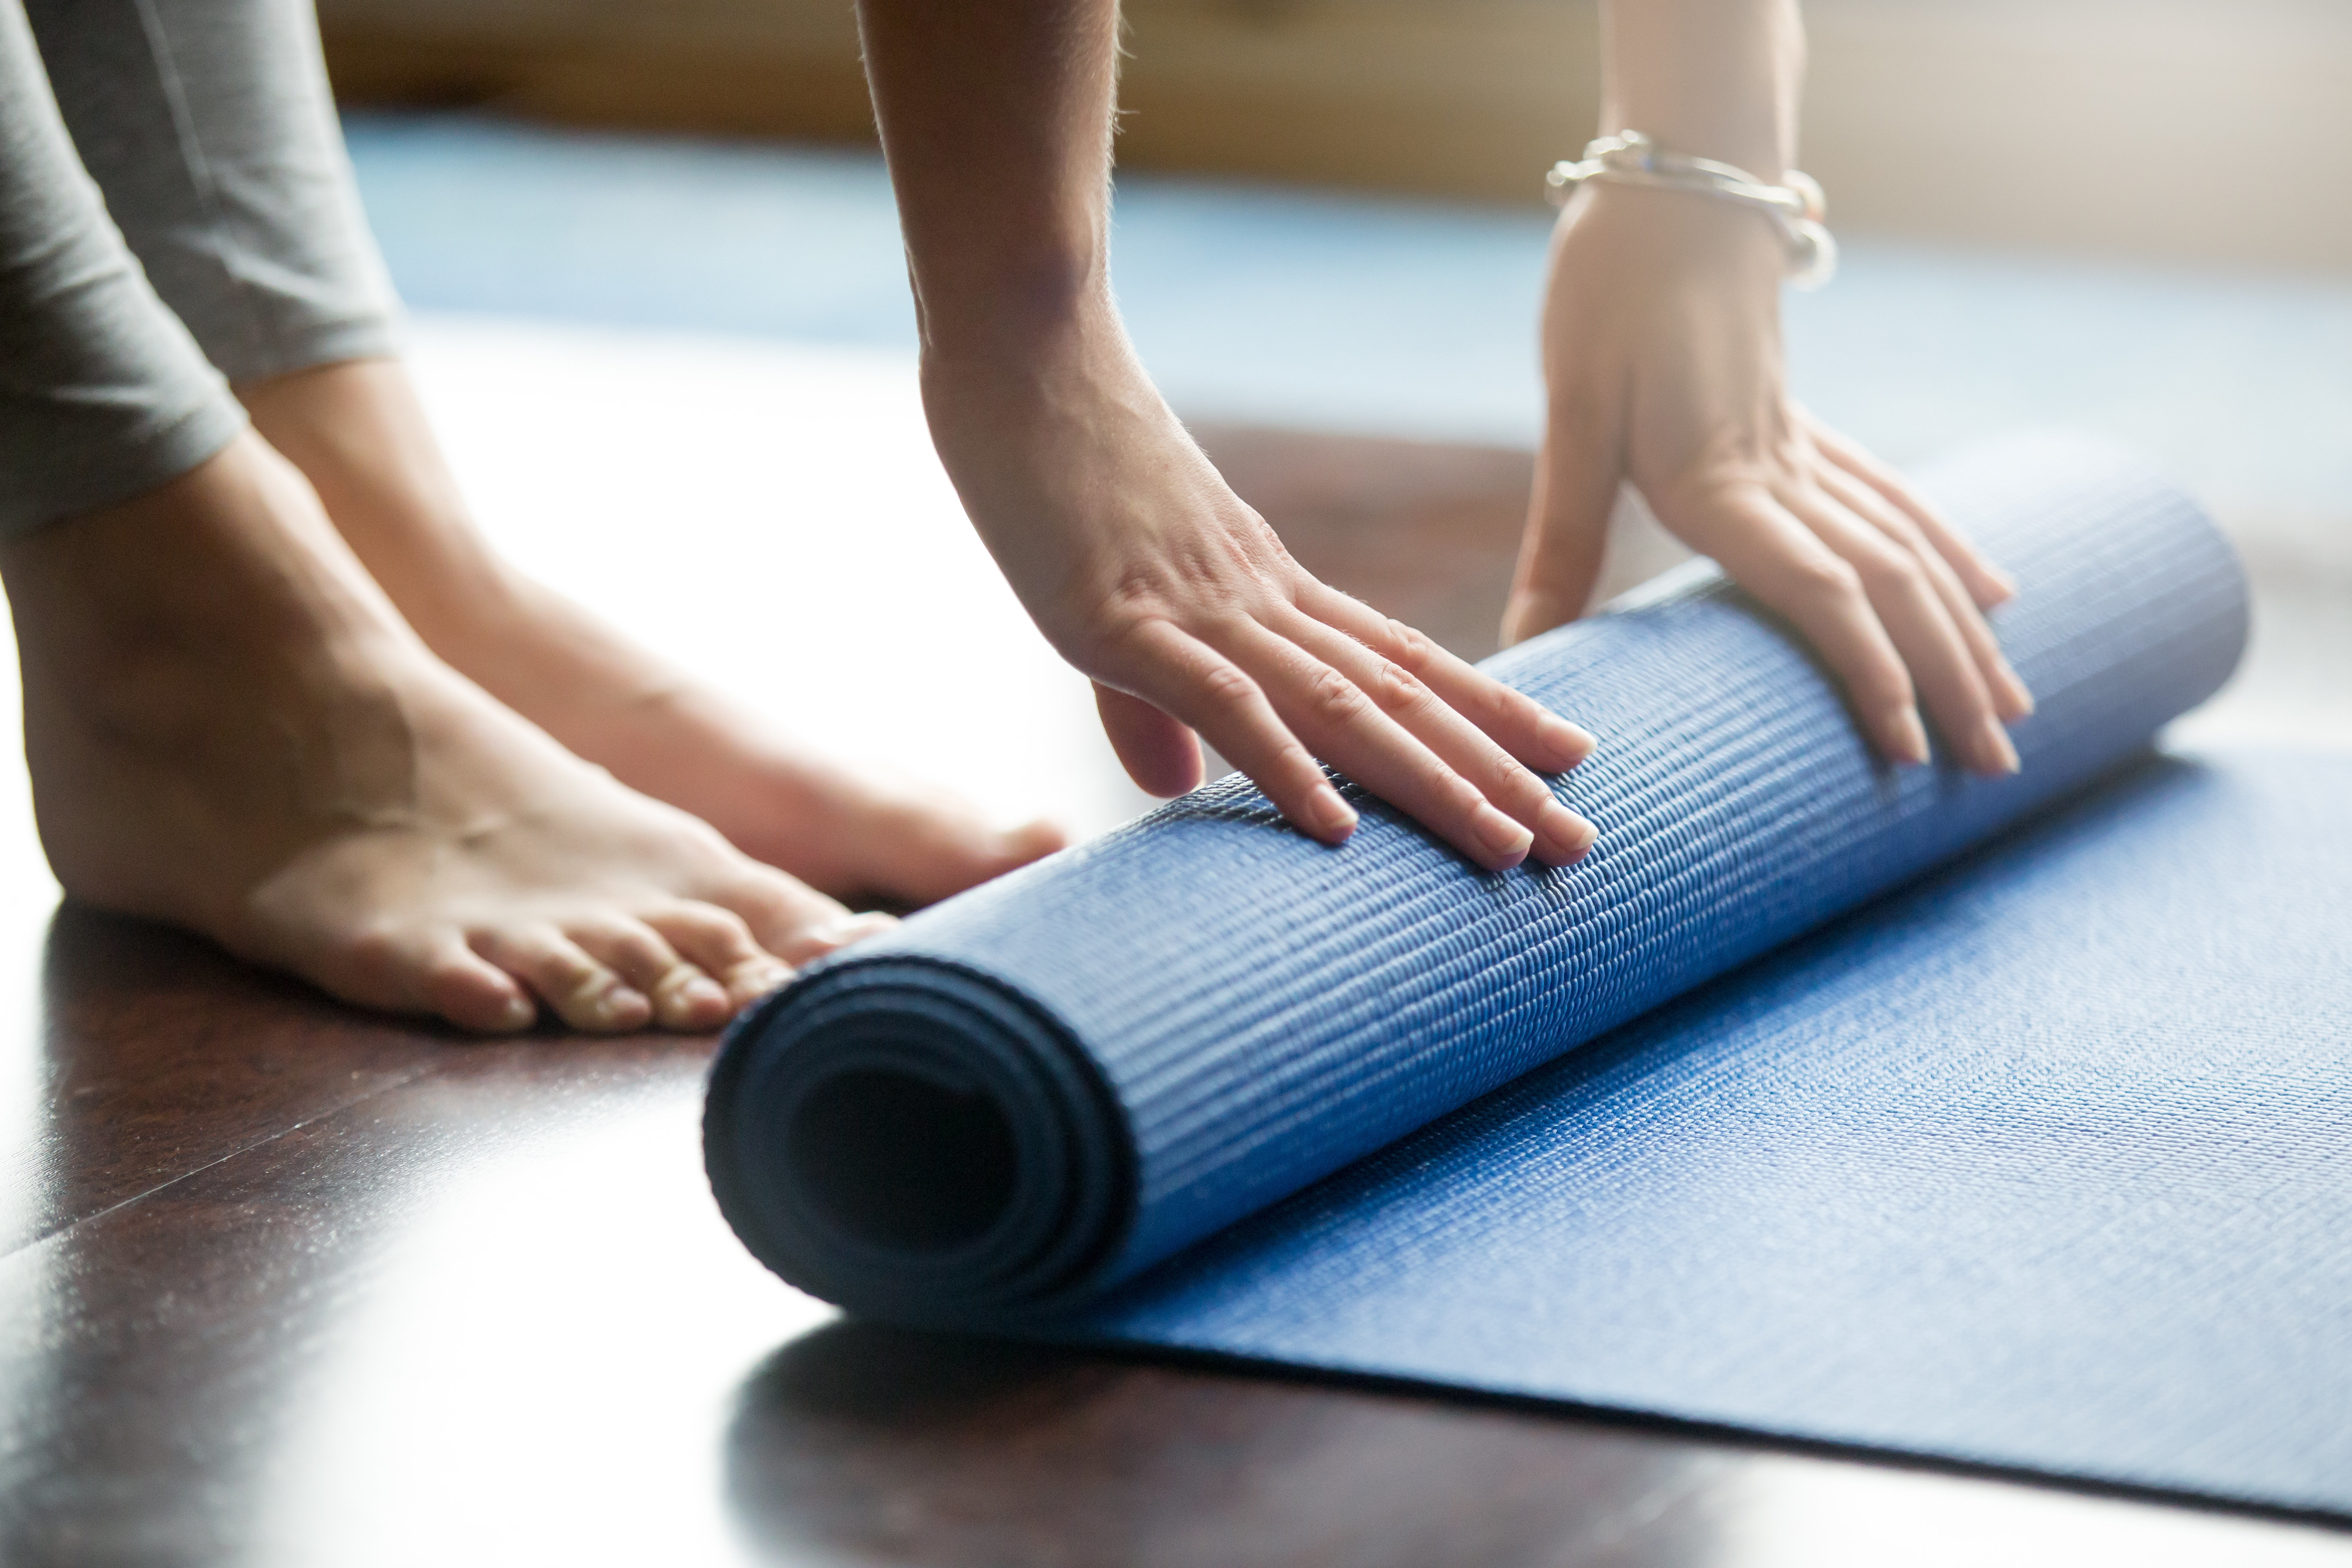 do your yoga mat